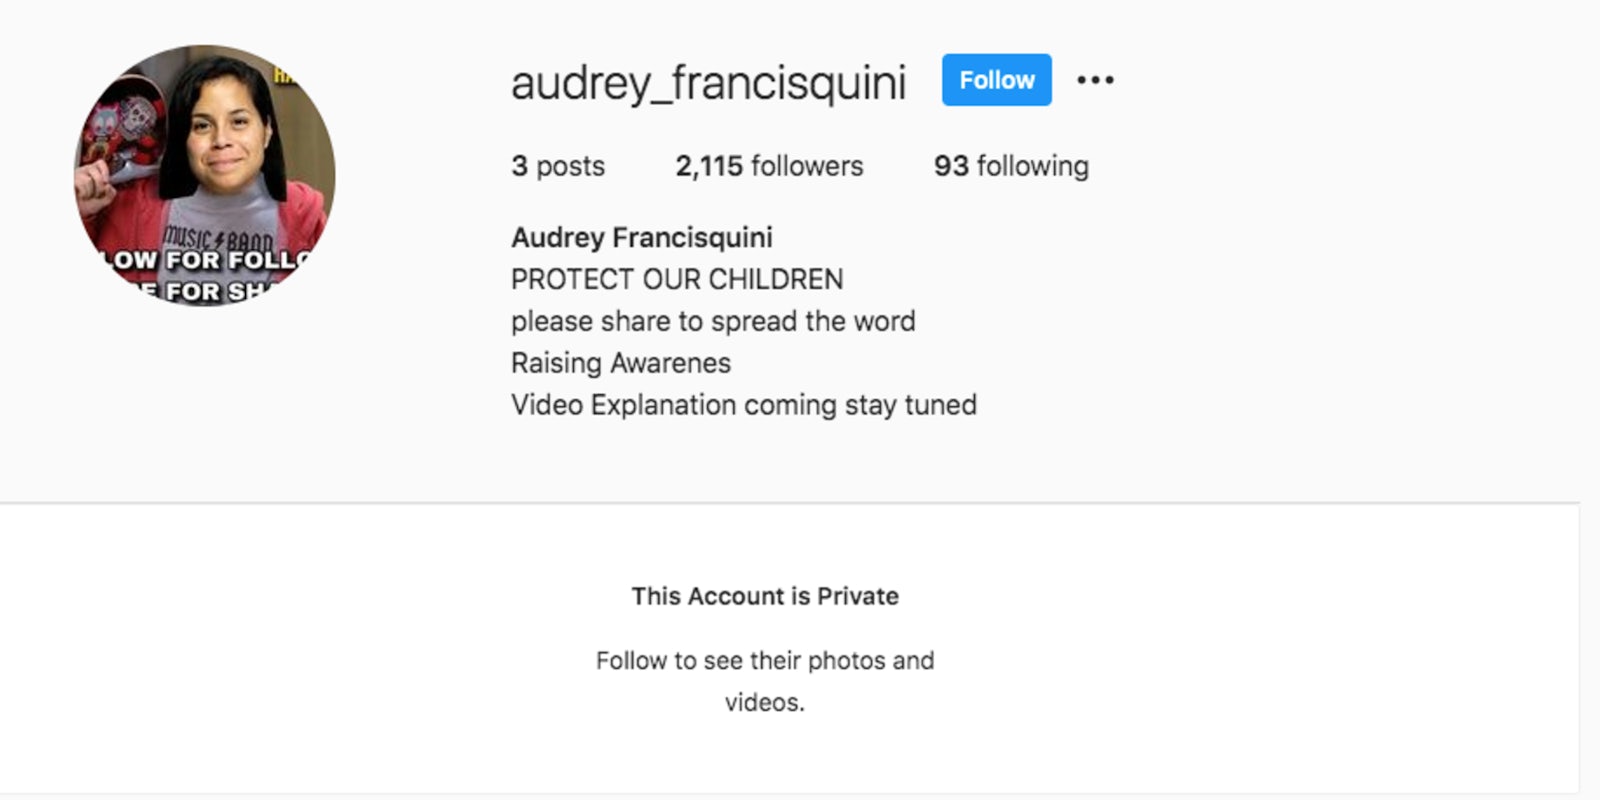 audrey_francisquini's instagram account